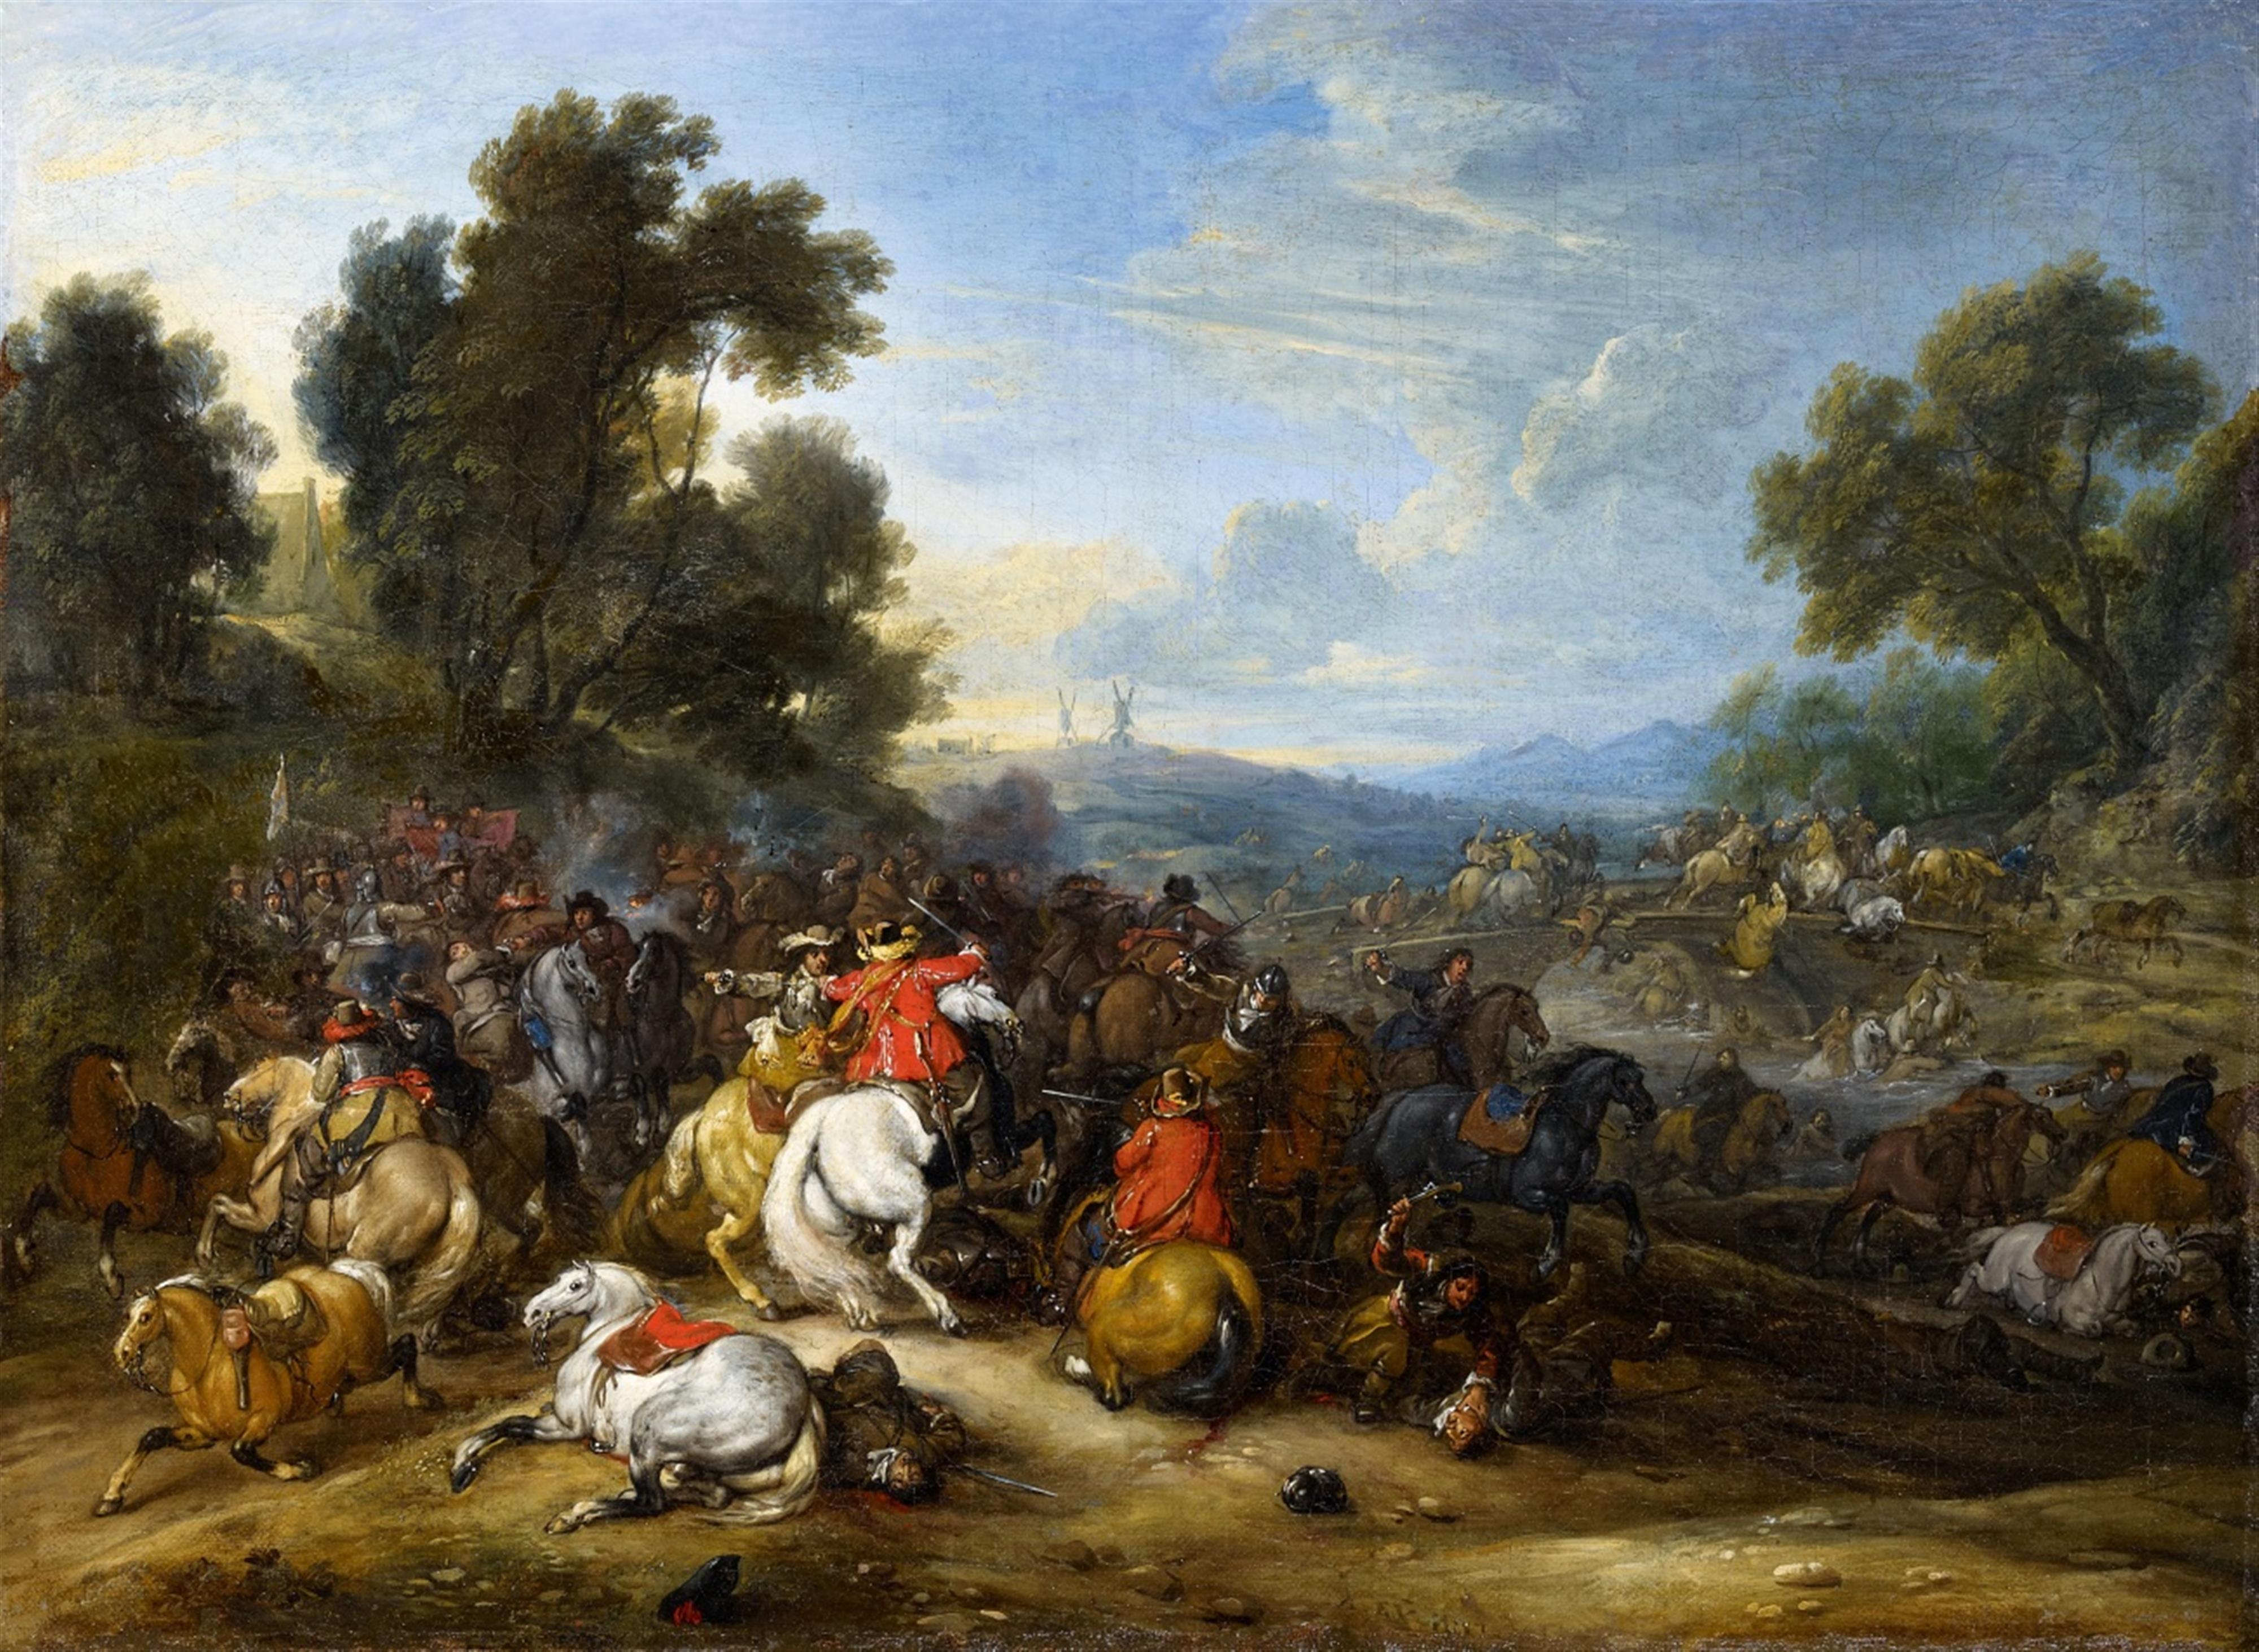 Adam Frans van der Meulen - A Cavalry Battle